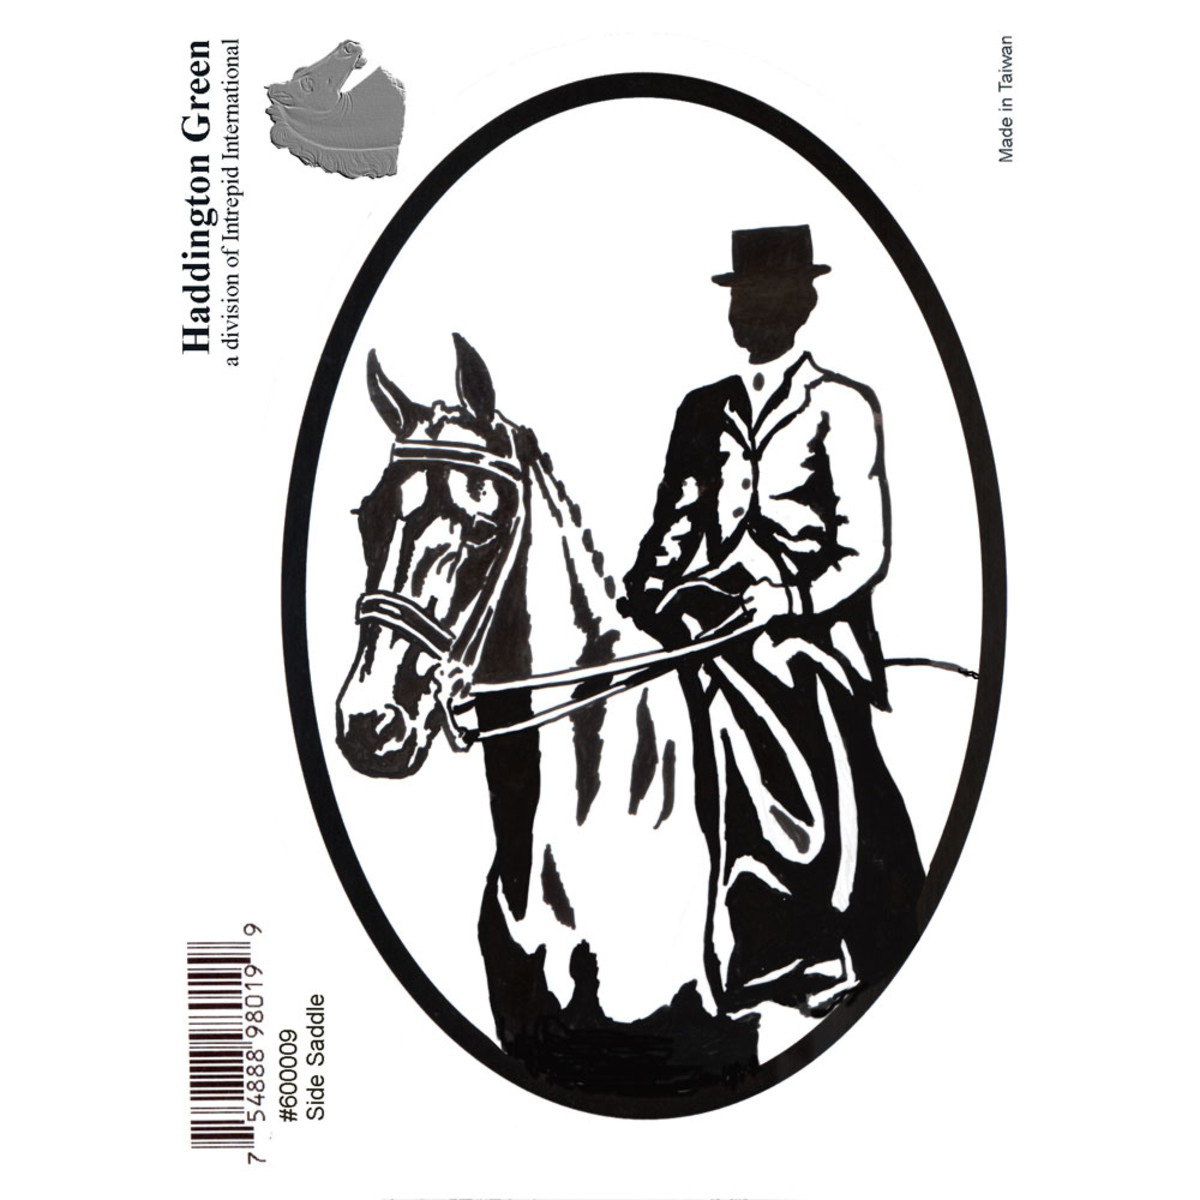 Sidesaddle English Rider on Horse Side Saddle Horse Euro Oval Window Sticker Decal